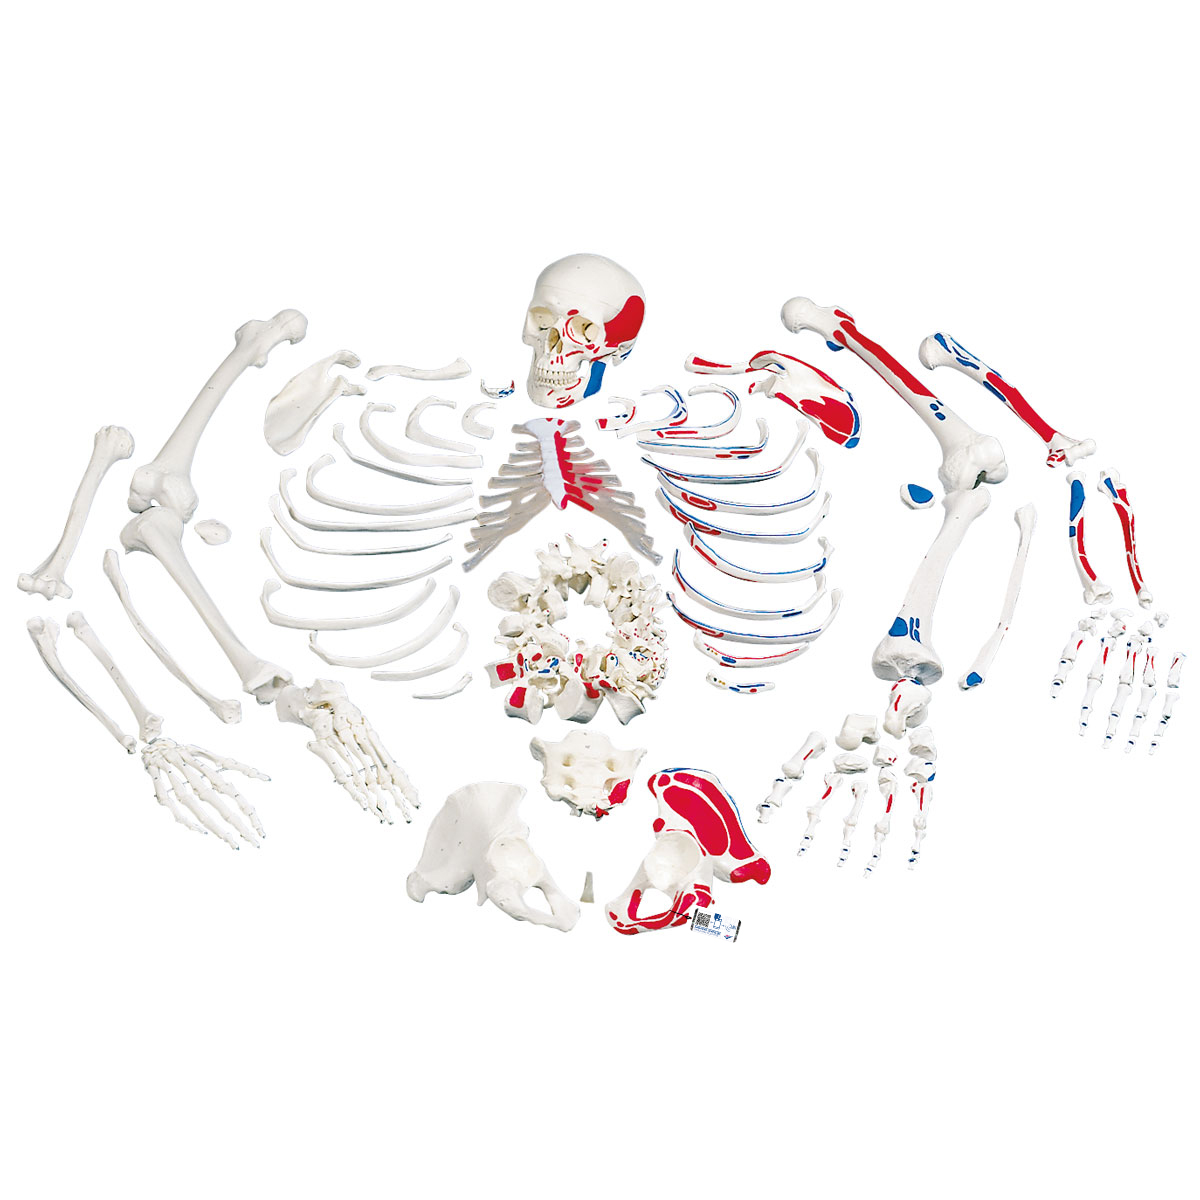 Unmontiertes Skelett Modell mit Muskeldarstellung, Knochen von Hand & Fuß auf Draht, lebensgroß - 3B Smart Anatomy, Bestellnummer 1020158, A05/2, 3B Scientific